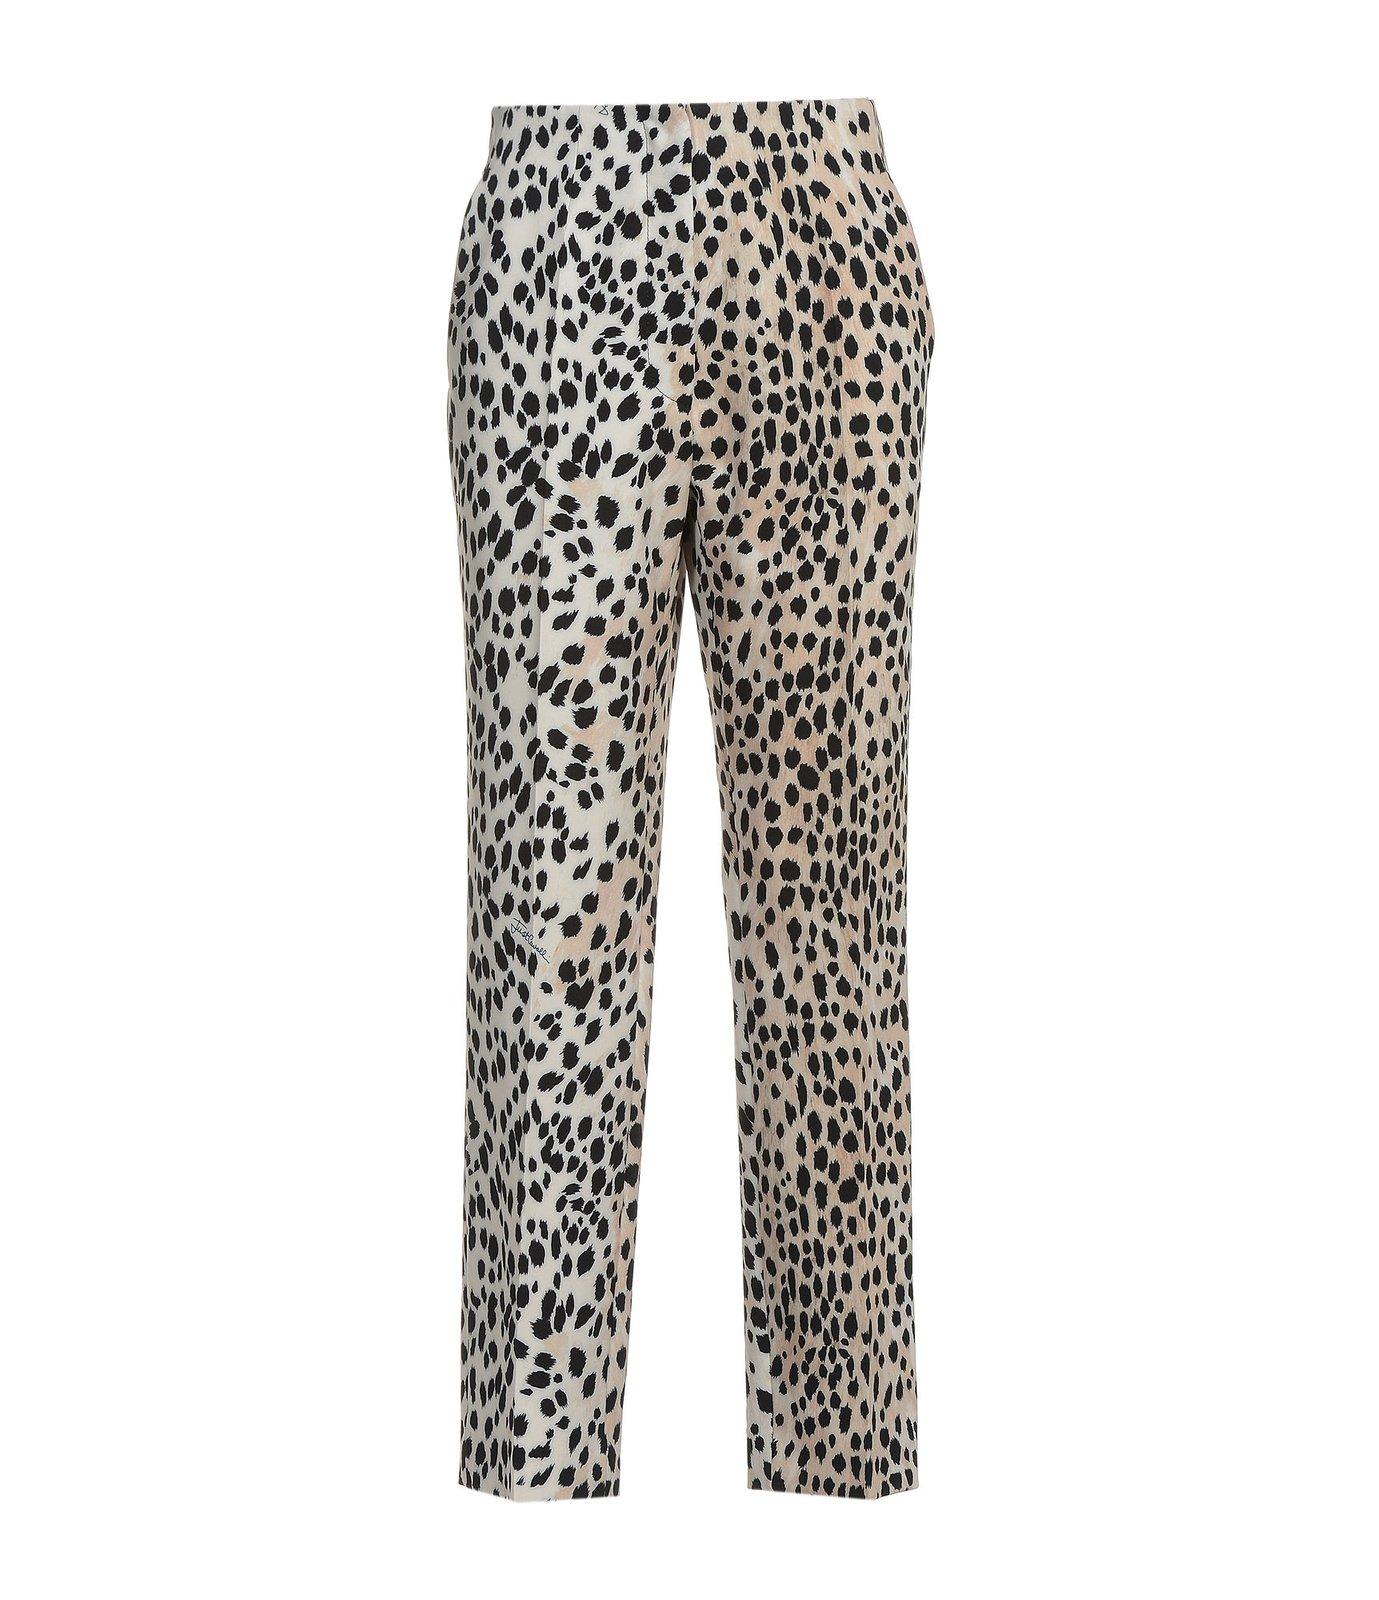 Just Cavalli Leopard Printed Straight Pants